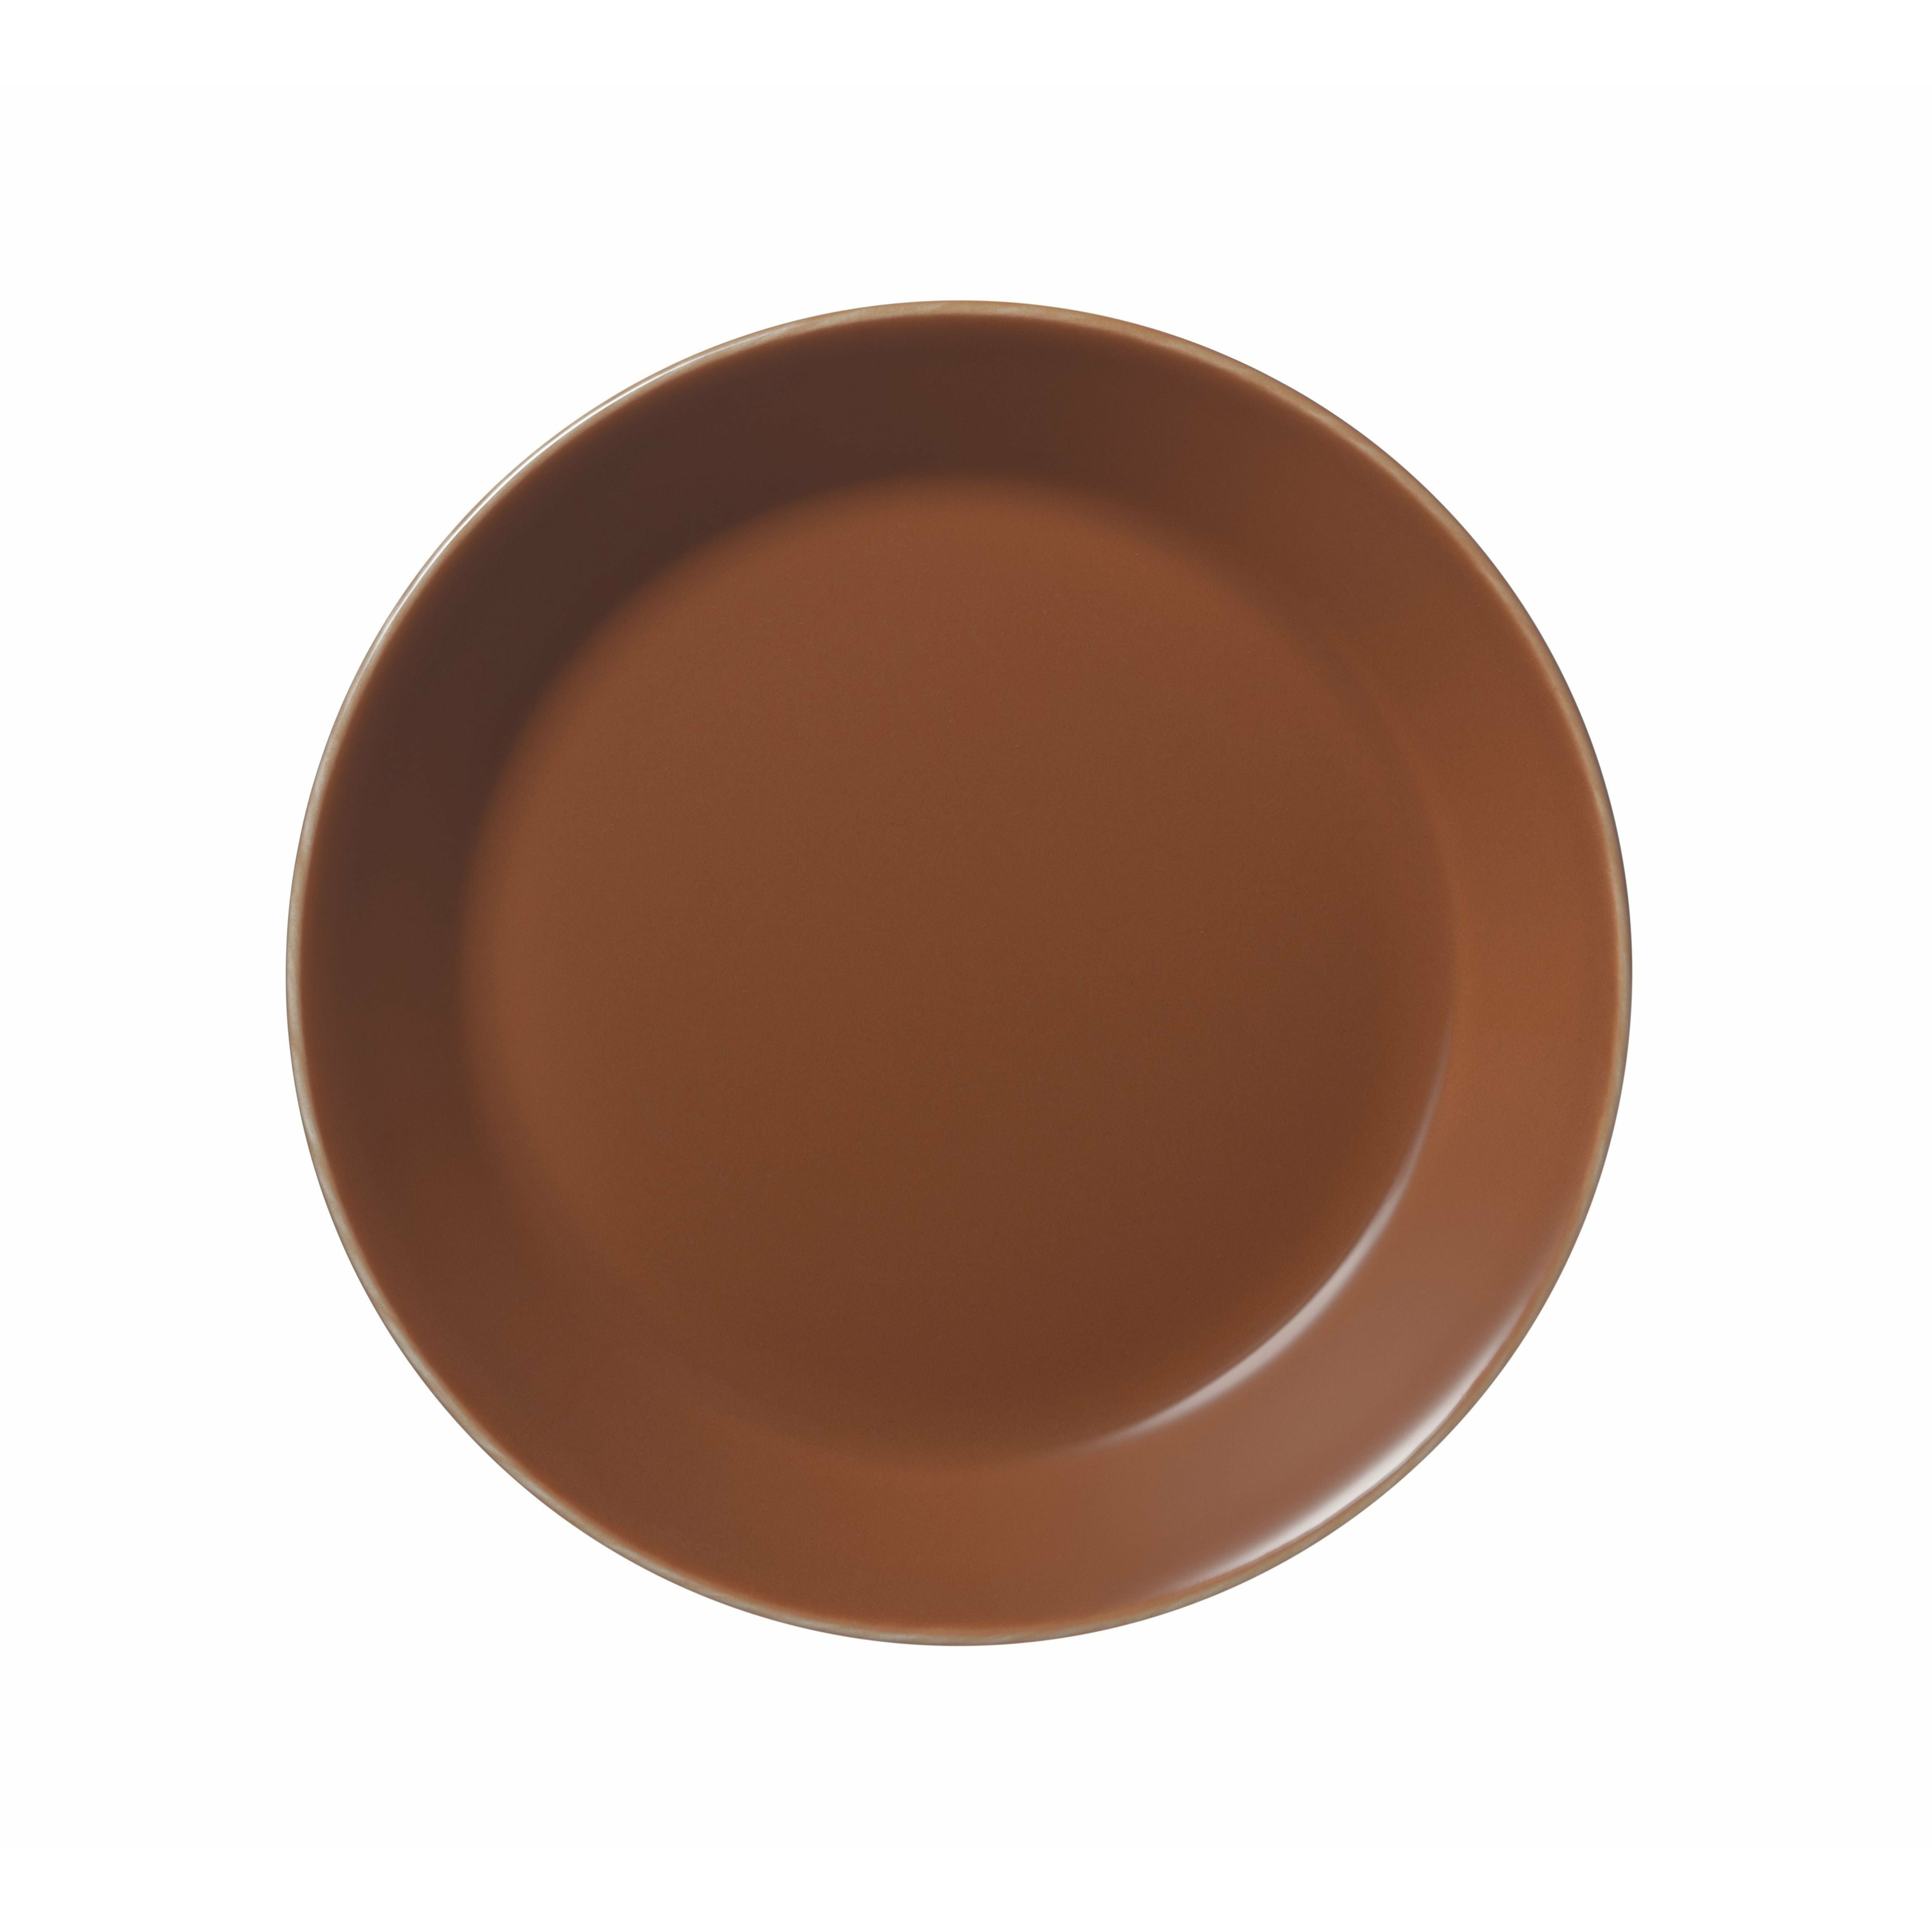 Iittala Teema Plate 17cm, Vintage Brown